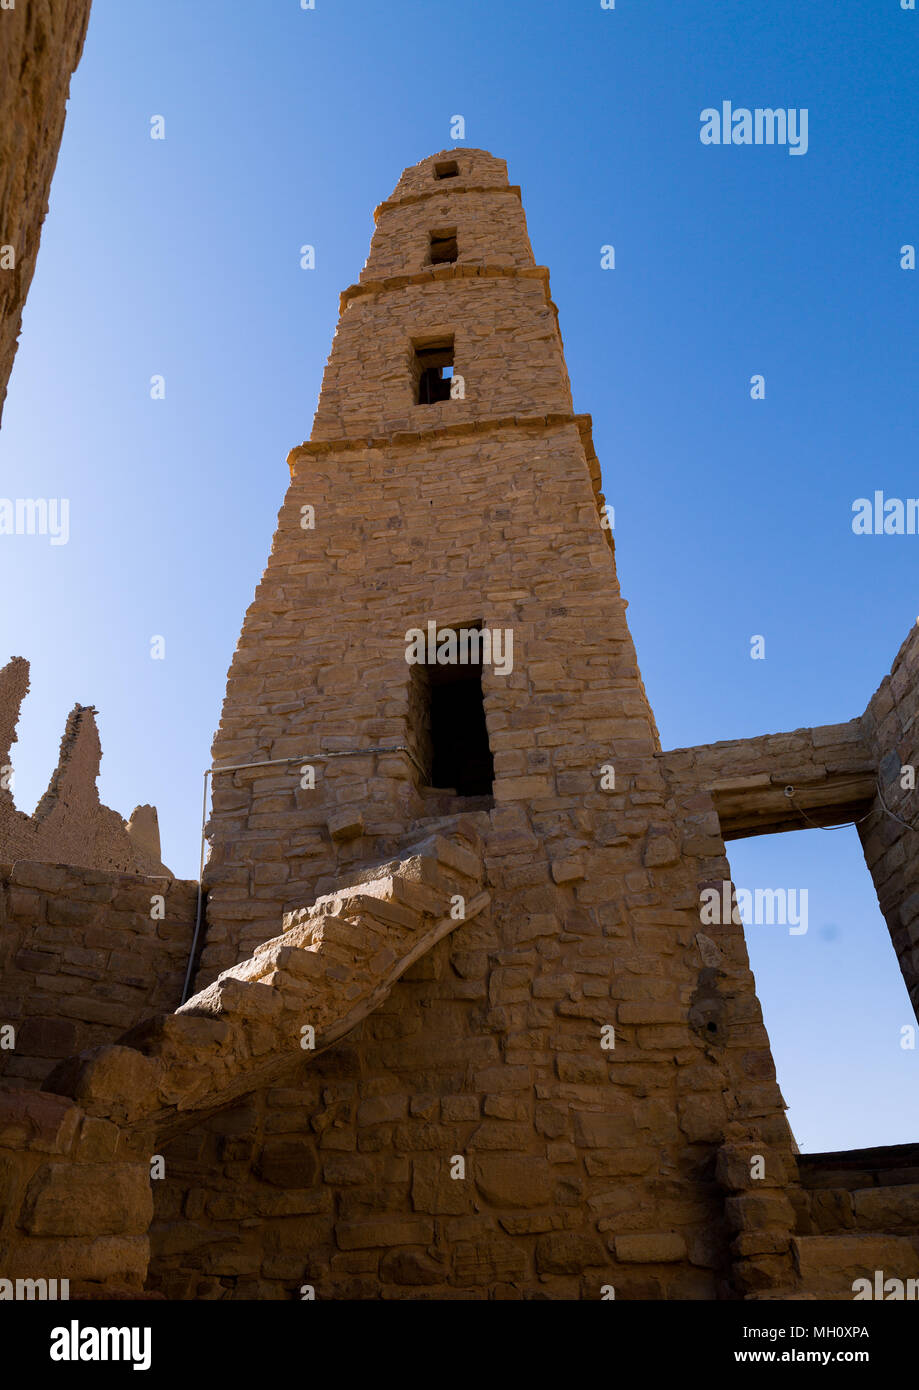 Omar ibn al-khattab mosque minaret, Al-Jawf Province, Dumat Al-Jandal, Saudi Arabia Stock Photo